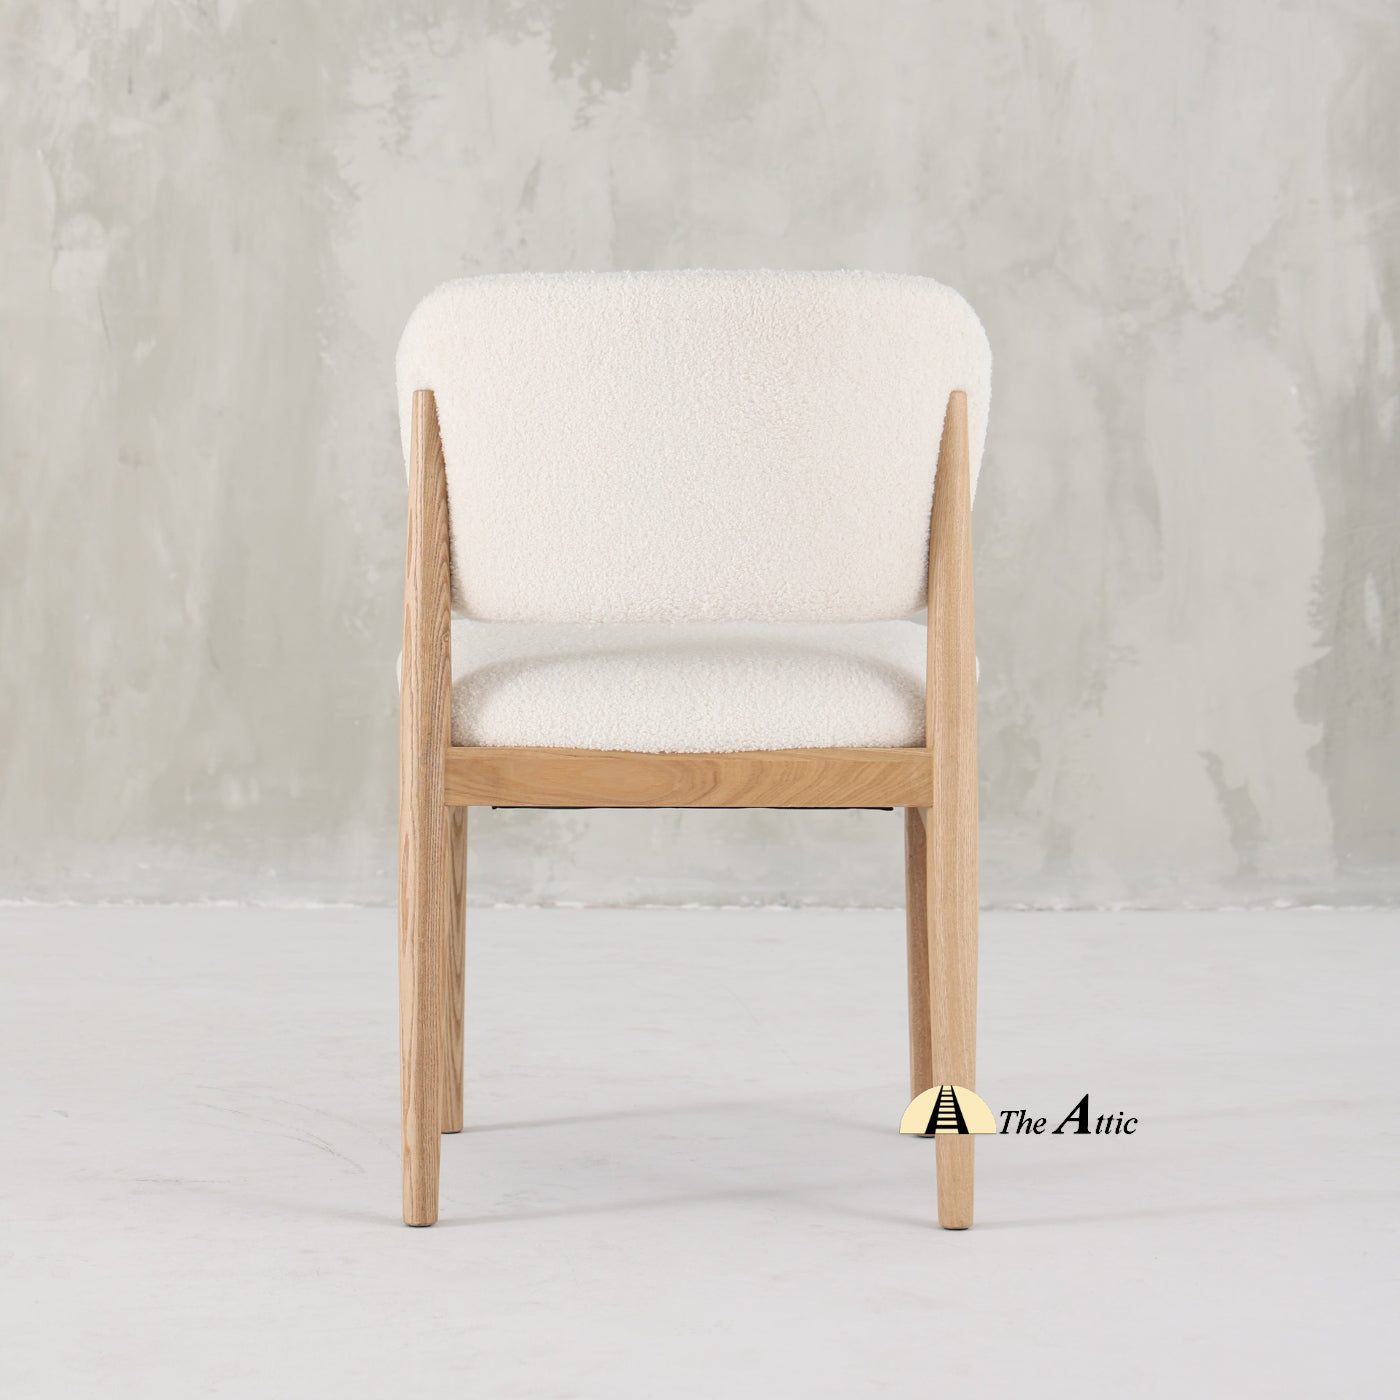 Savannah Boucle Dining Armchair, Modern Oak Wood and Boucle Chair - The Attic Dubai